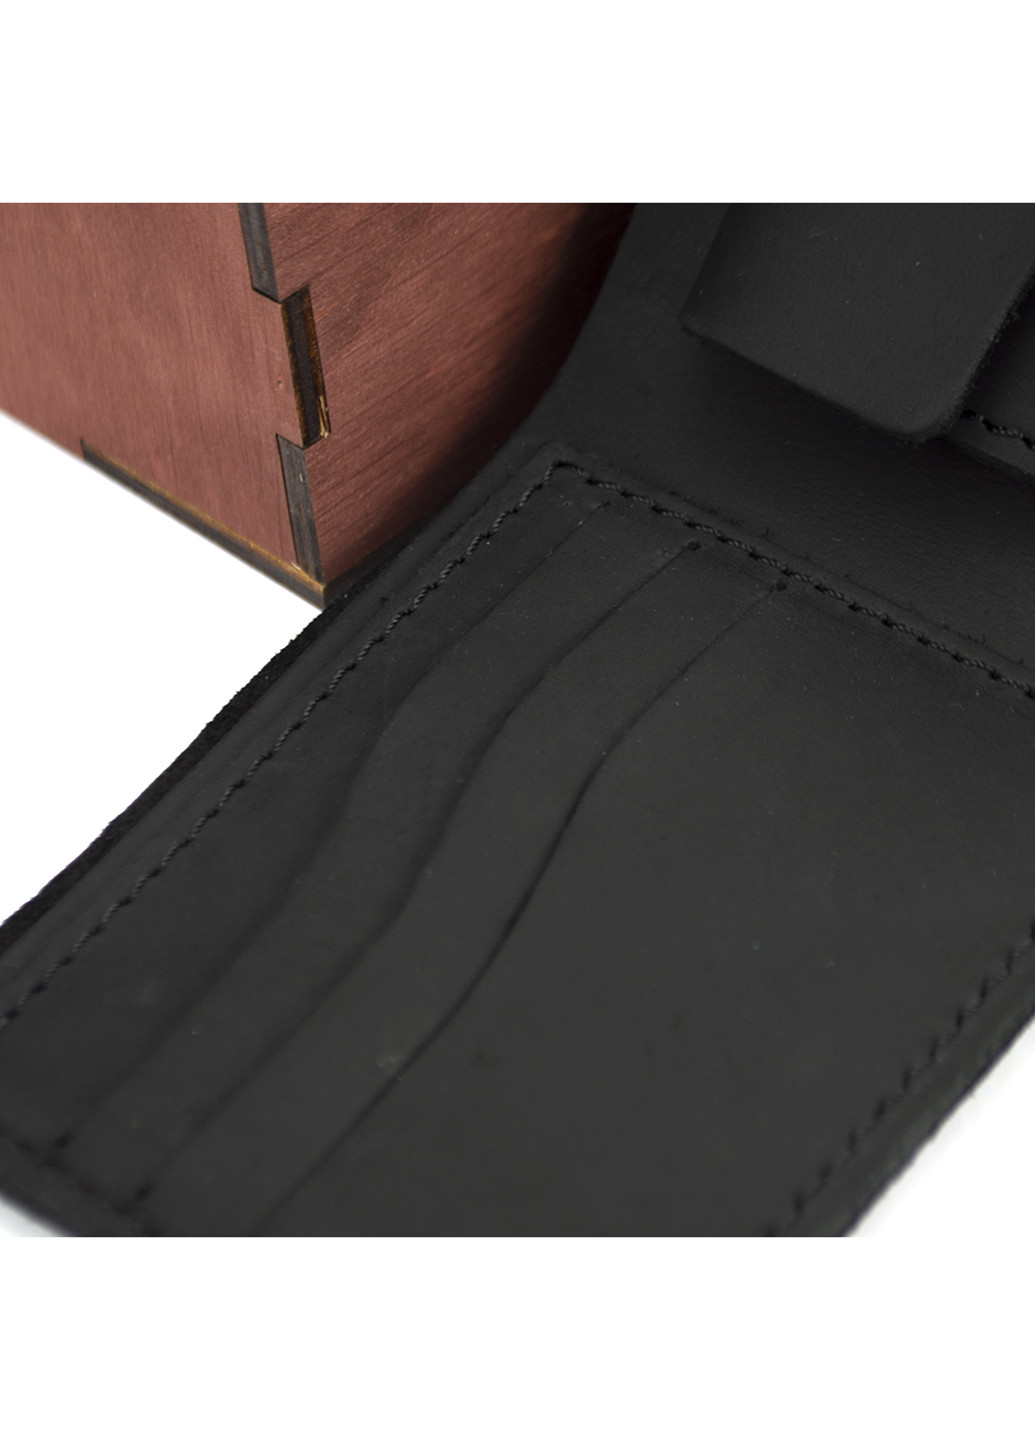 Мужской подарочный набор №47 черный (кошелек и обложка на паспорт) в коробке HandyCover (227723577)